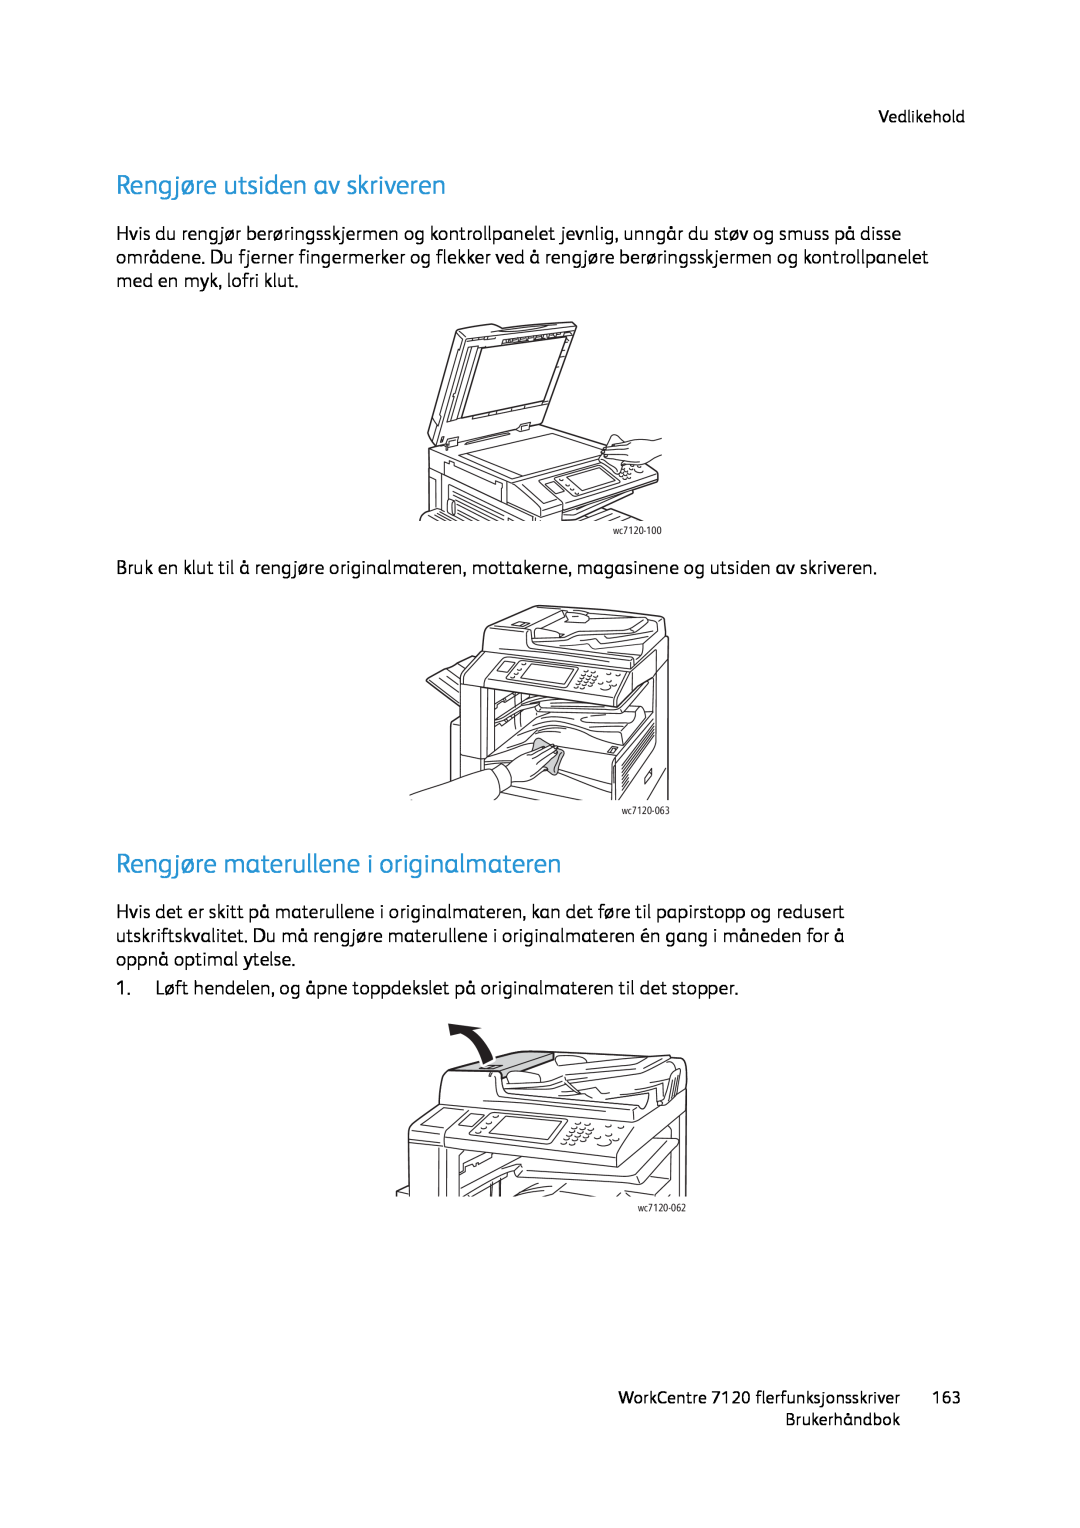 Xerox manual Rengjøre utsiden av skriveren, Rengjøre materullene i originalmateren, wc7120-100, wc7120-063, wc7120-062 